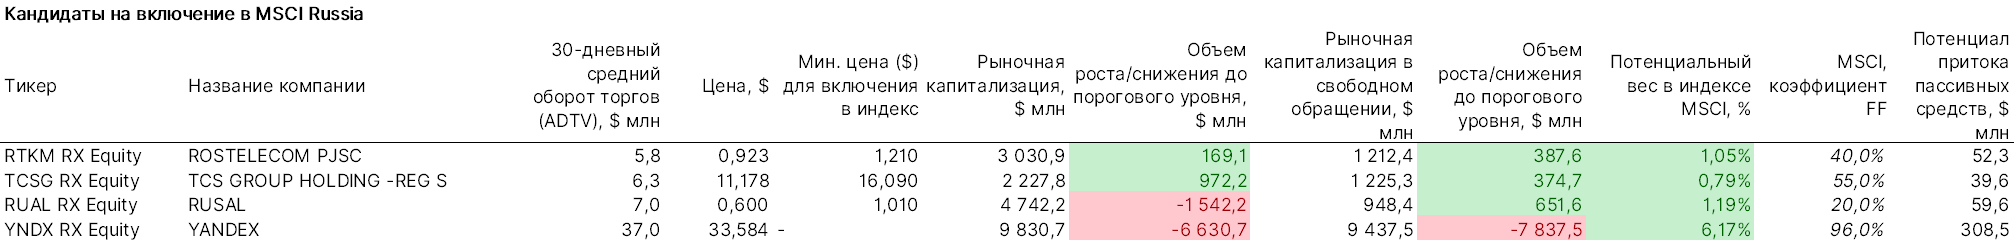 Кандидаты на включение в MSCI Russia